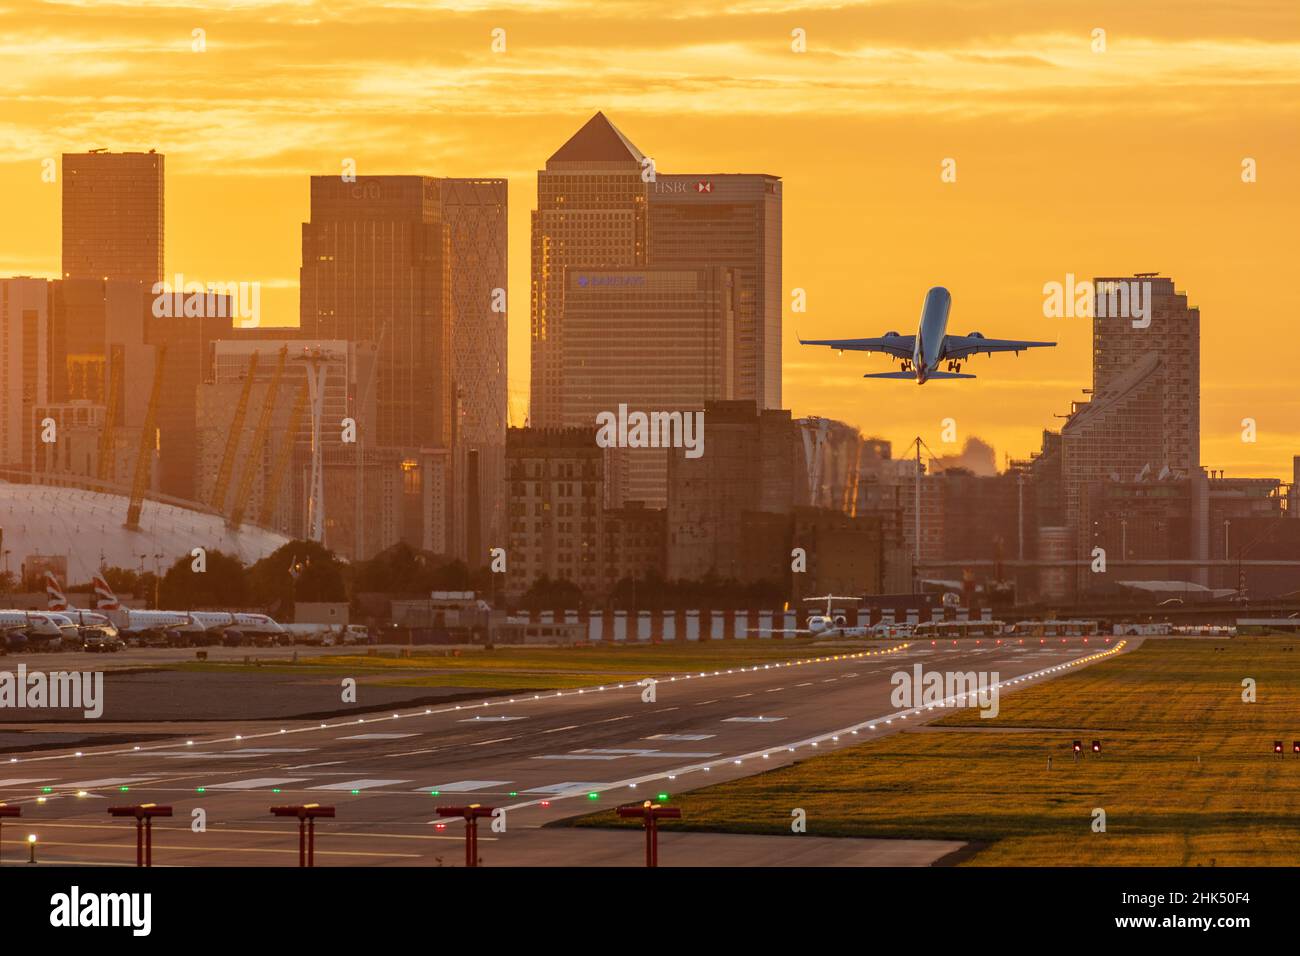 Décollage de l'aéroport de London City au coucher du soleil, avec Canary Wharf et O2 Arena en arrière-plan, Londres, Angleterre, Royaume-Uni, Europe Banque D'Images